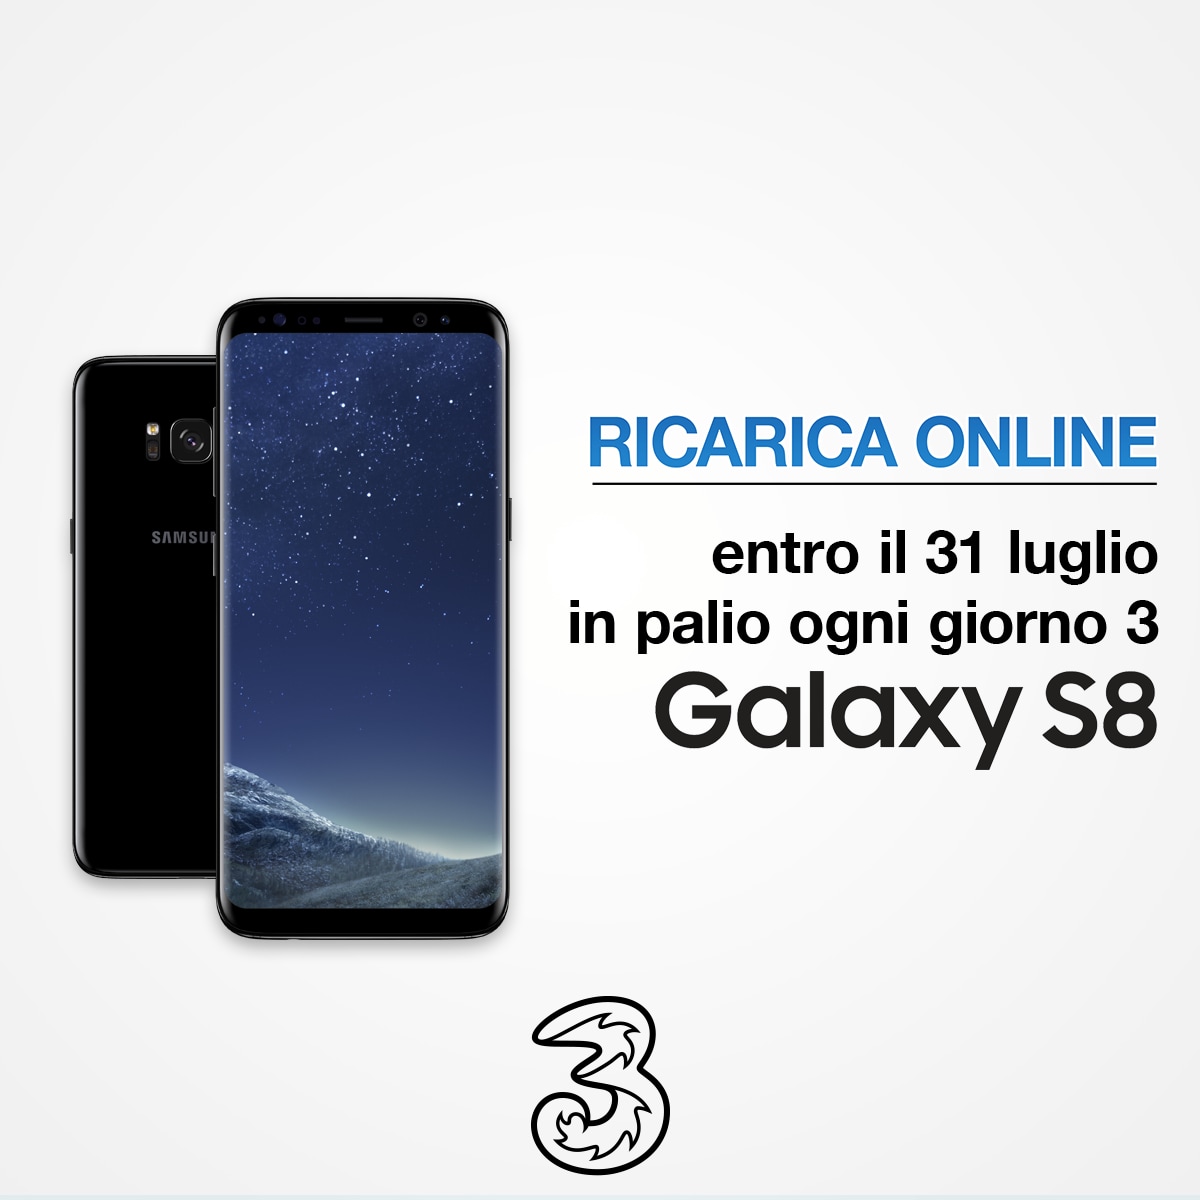 Provate a vincere un Galaxy S8 con il nuovo concorso per clienti 3 Italia!